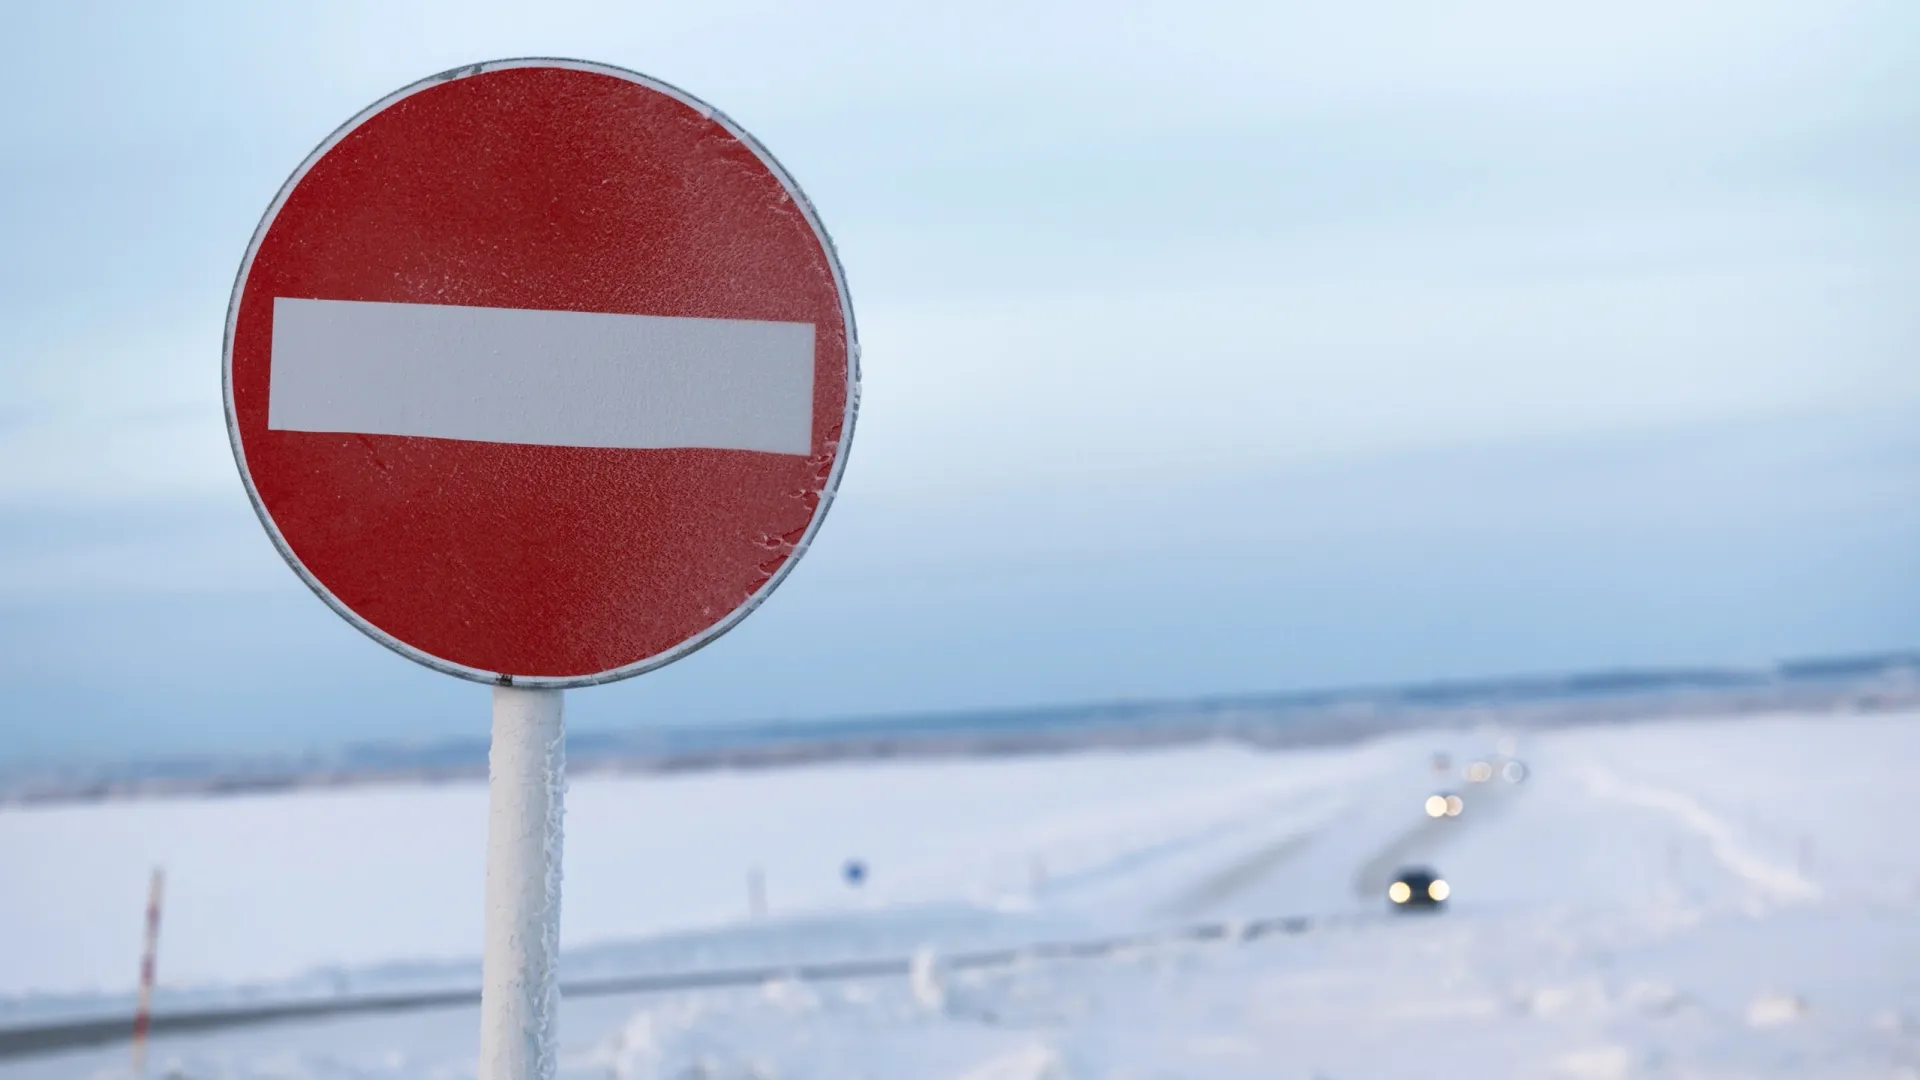 Круглосуточно по зимнику могут ездить только легковые автомобили. Фото: Юлия Чудинова / «Ямал-Медиа»